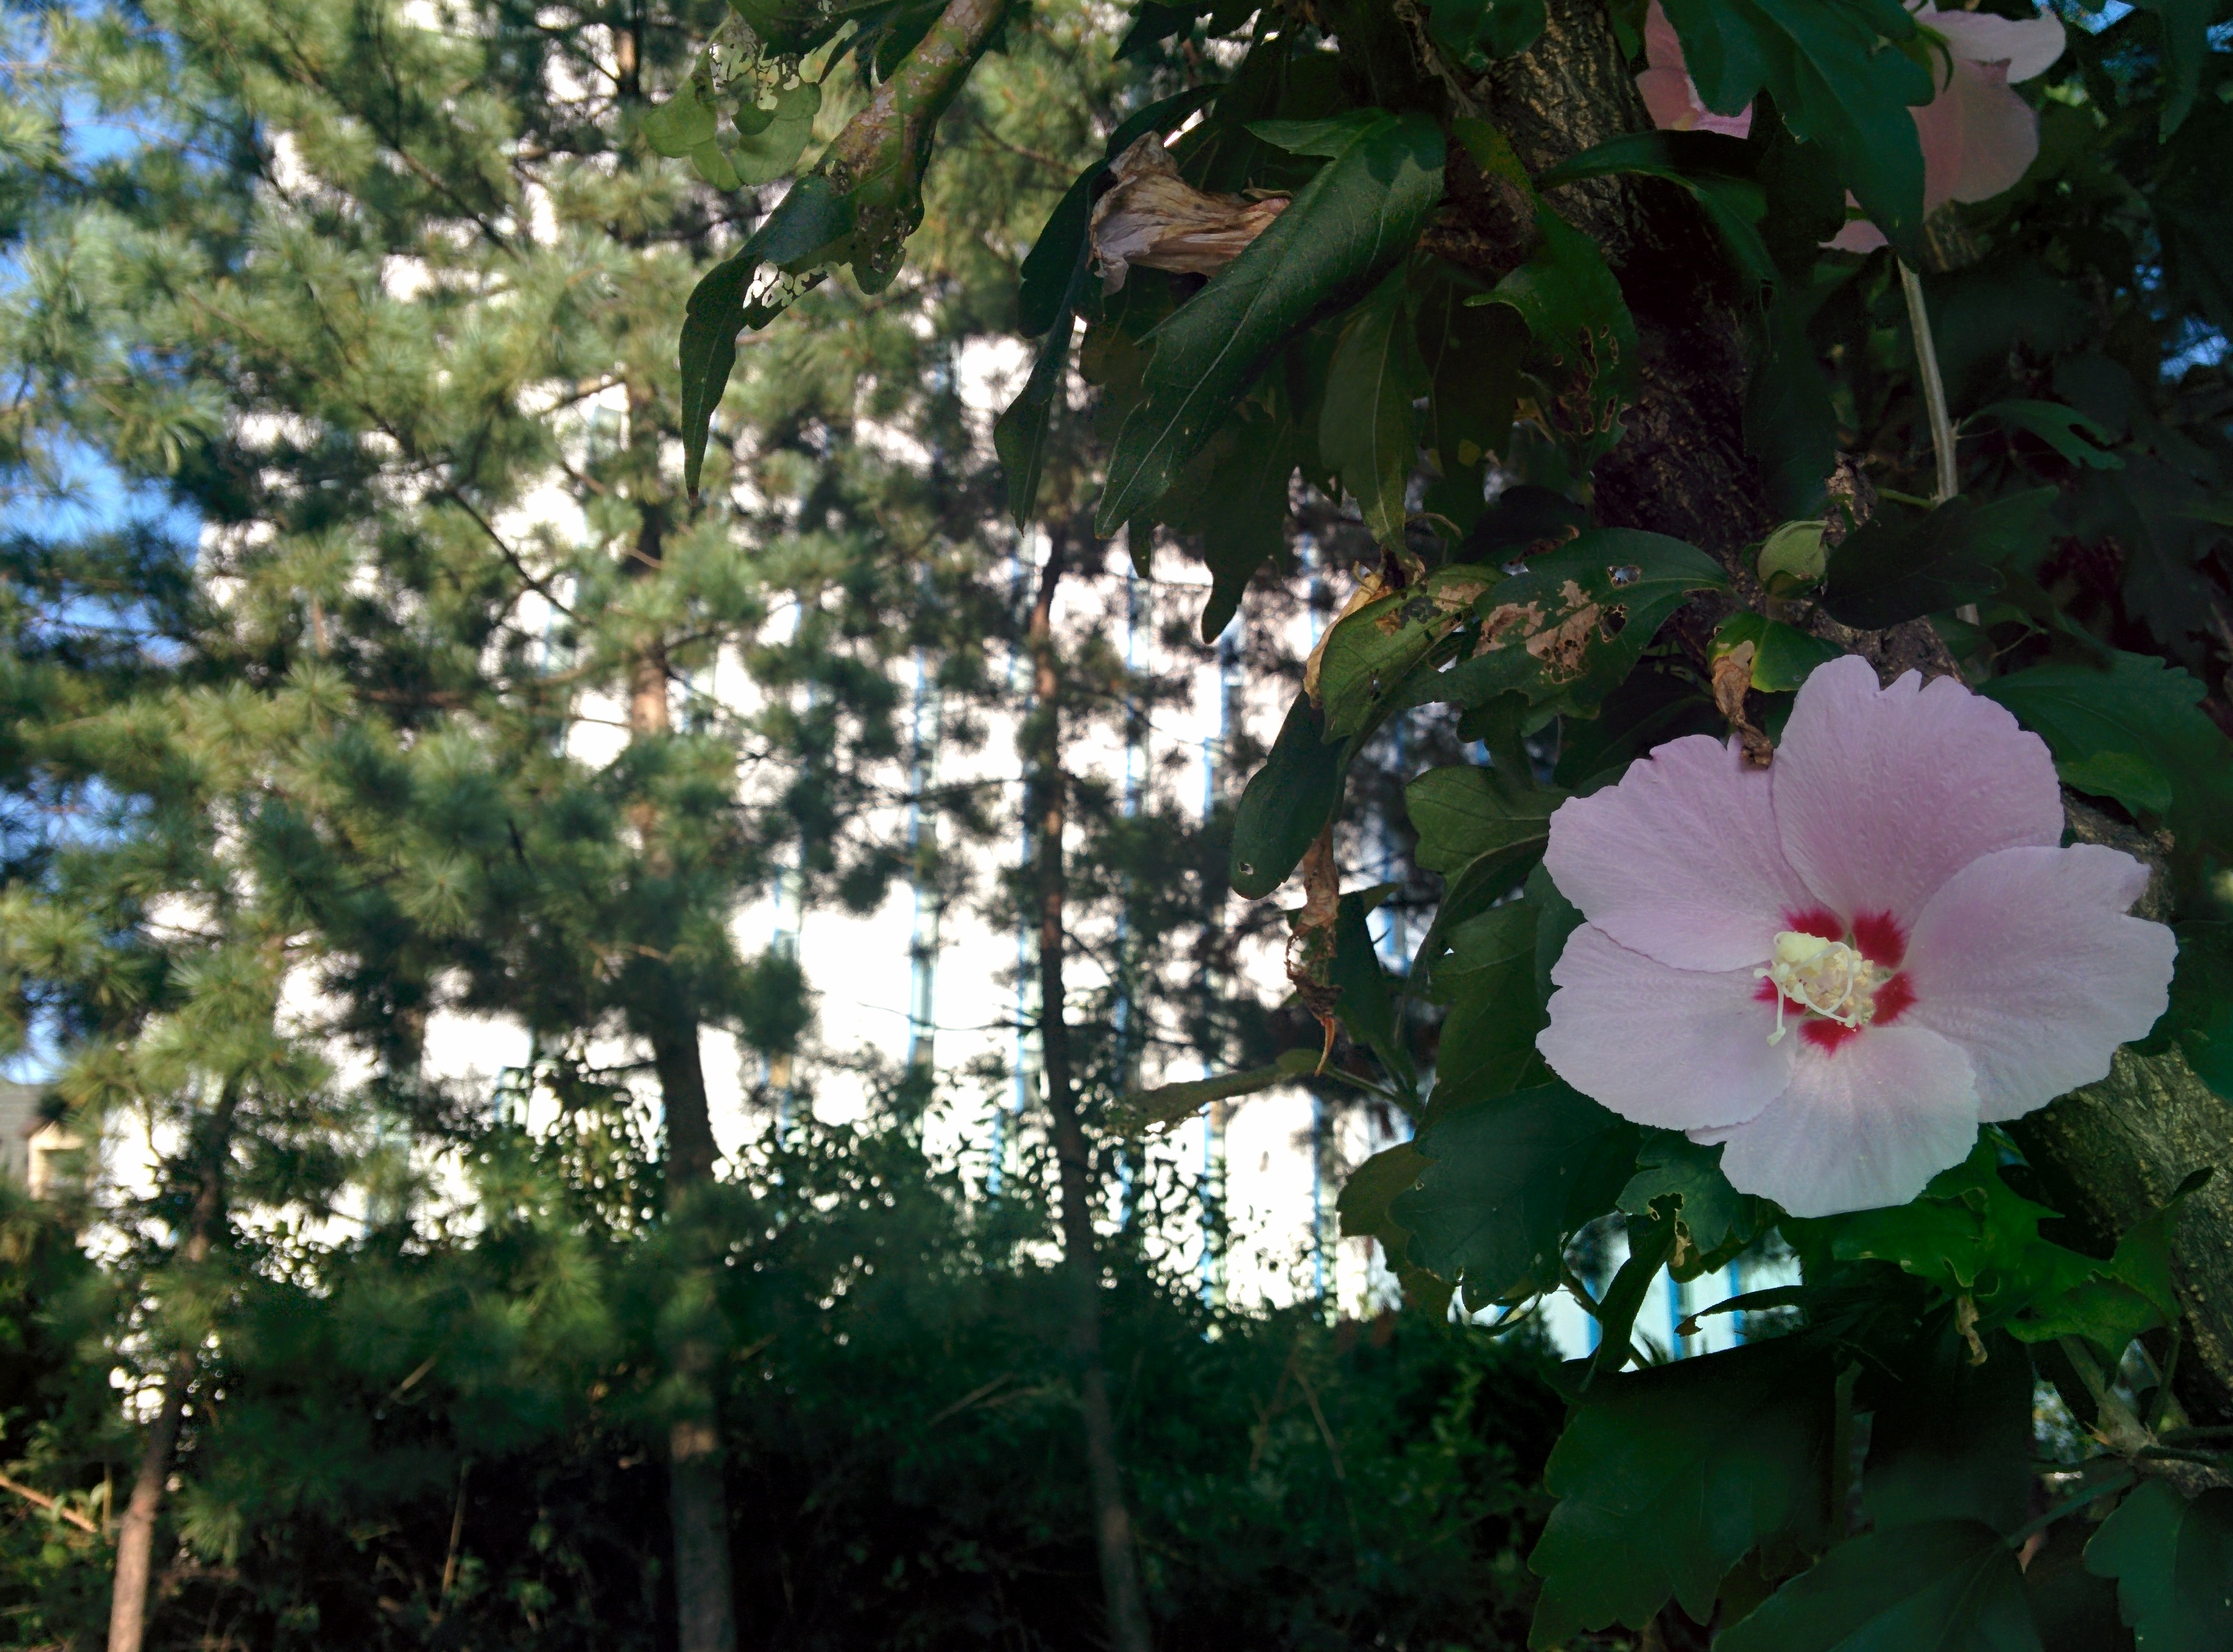 IMG_20150903_162917.jpg 바람에 날리는 옅은 분홍색 무궁화 꽃